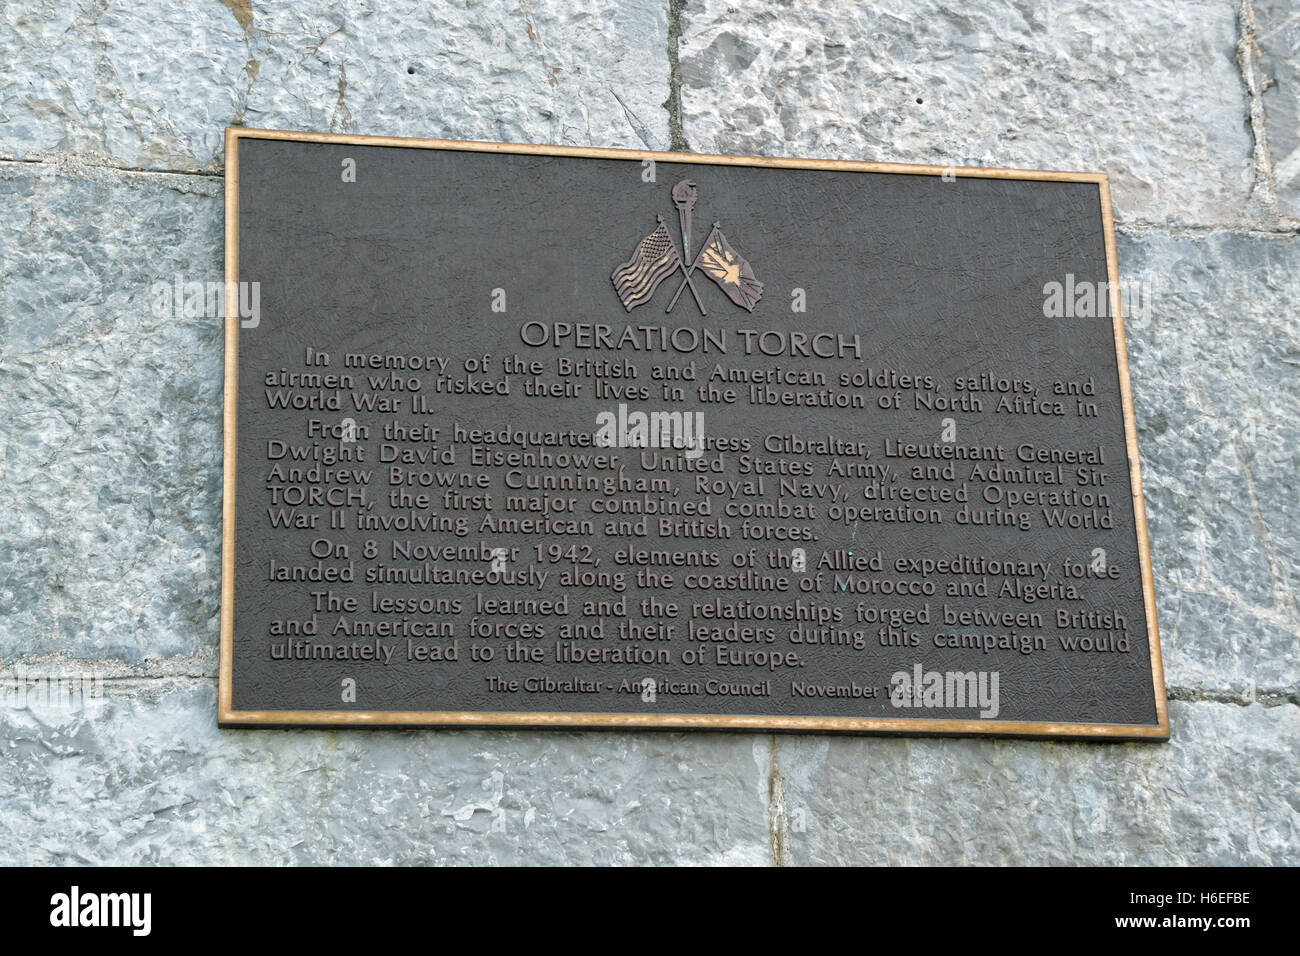 Gedenktafel neben dem amerikanischen Kriegerdenkmal Gibraltar zum Gedenken an die Operation Torch, WW2 Invasion in Nordafrika Stockfoto